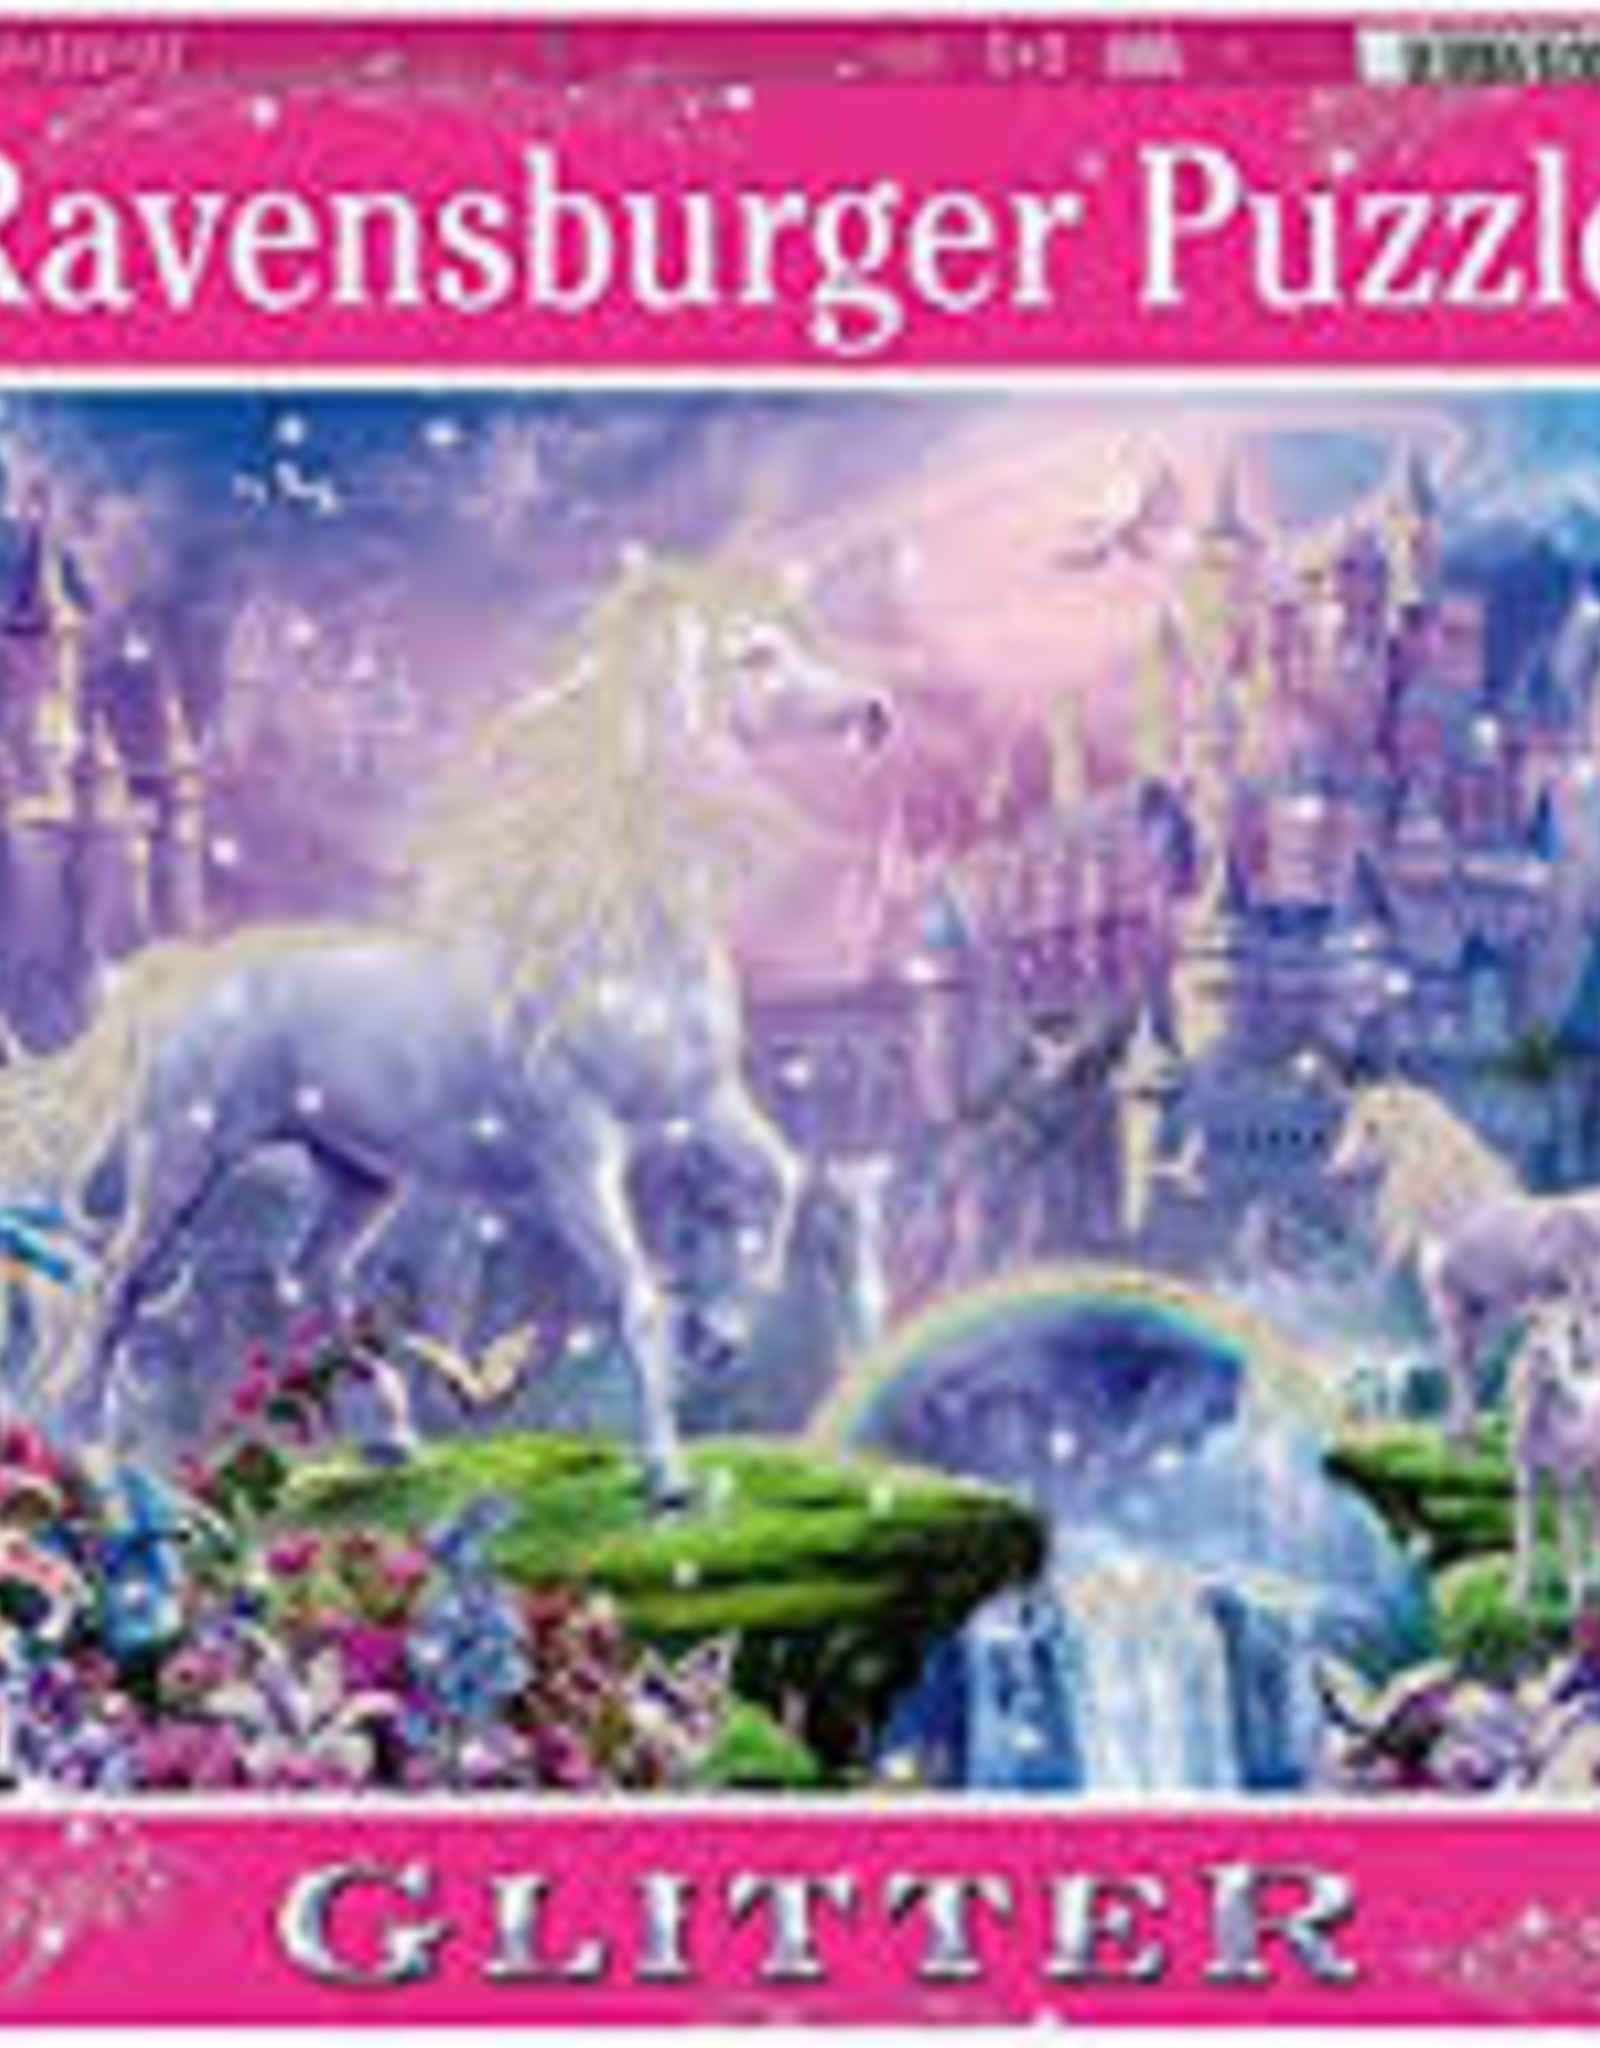 Ravensburger Unicorn Kingdom 100pc Glitter RAV12907